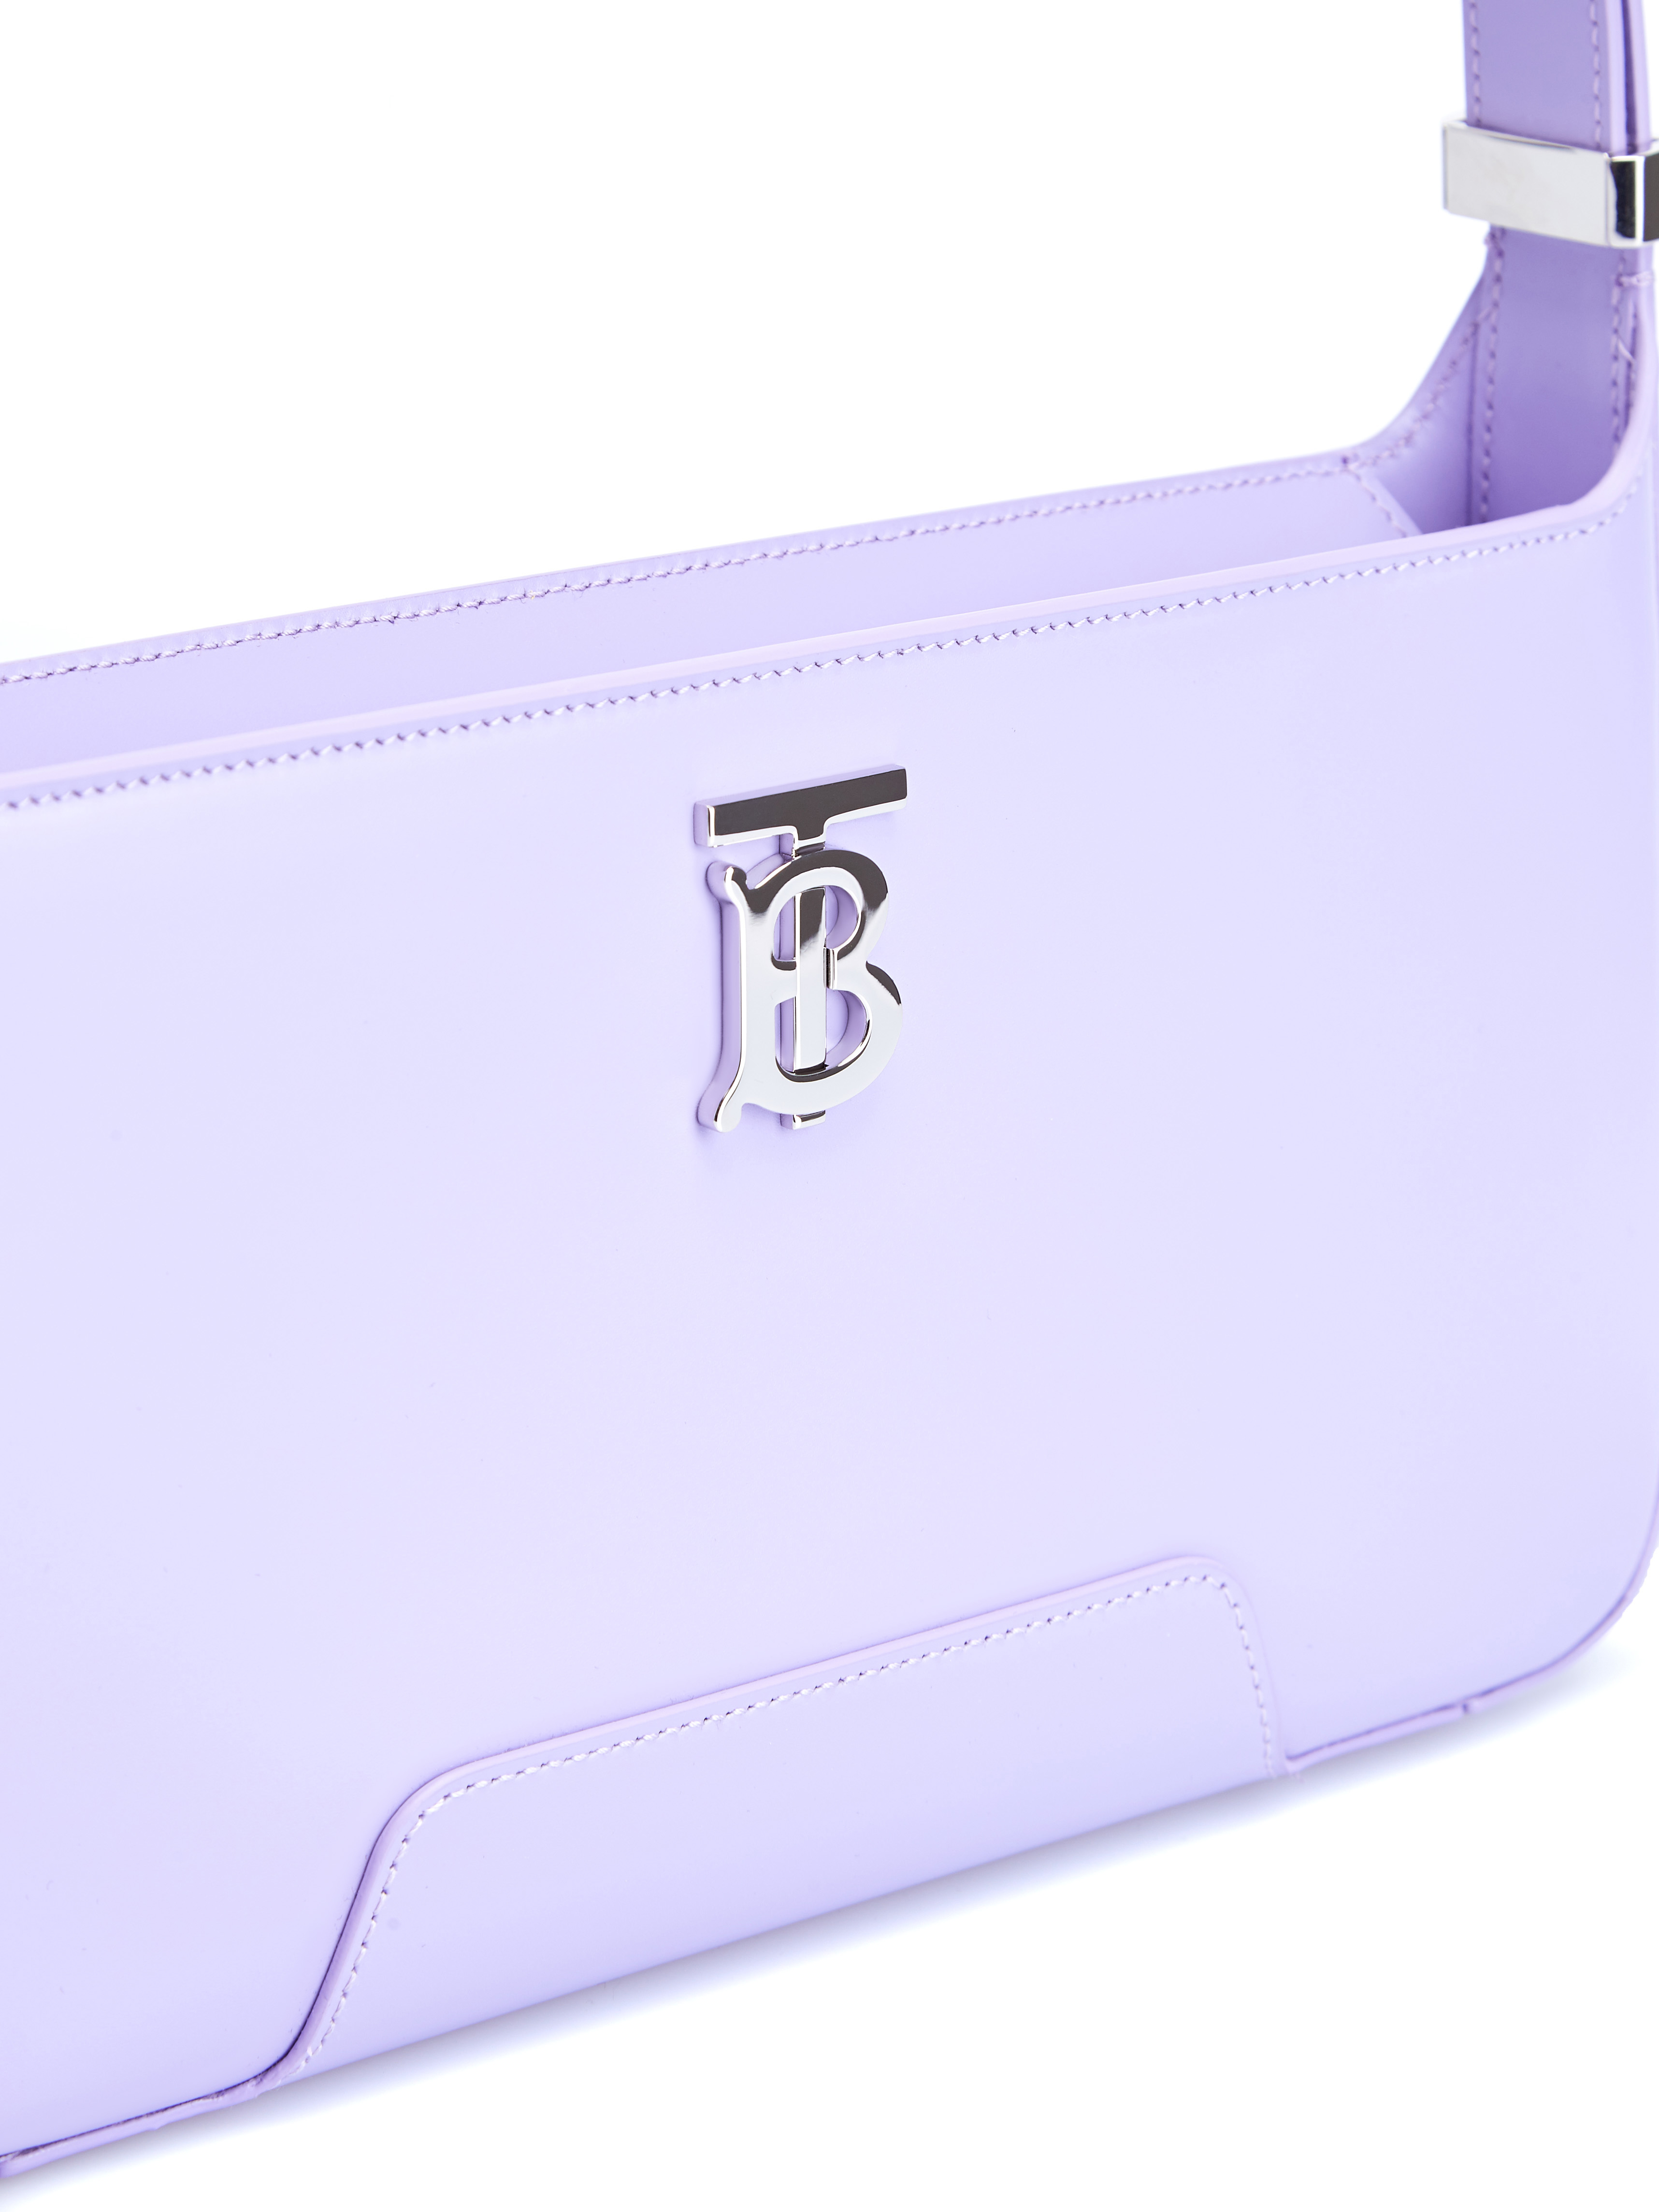 Кожаная сумка TB в пастельном лавандовом оттенке BURBERRY, цвет фиолетовый, размер 40;41;42;43;44;45 - фото 6